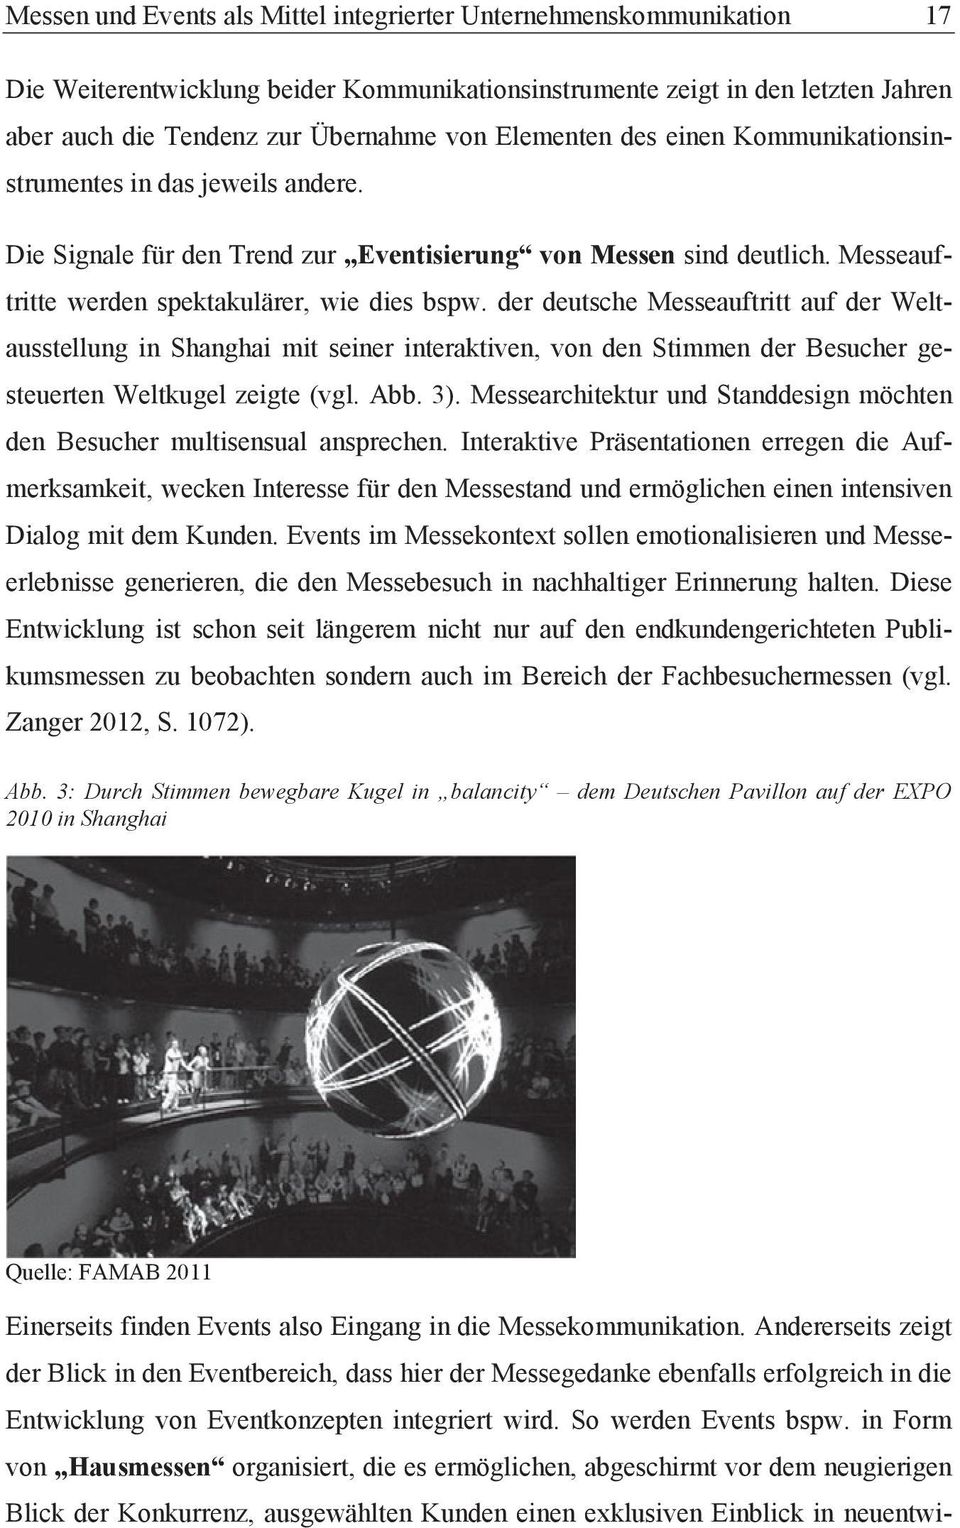 der deutsche Messeauftritt auf der Weltausstellung in Shanghai mit seiner interaktiven, von den Stimmen der Besucher gesteuerten Weltkugel zeigte (vgl. Abb. 3).